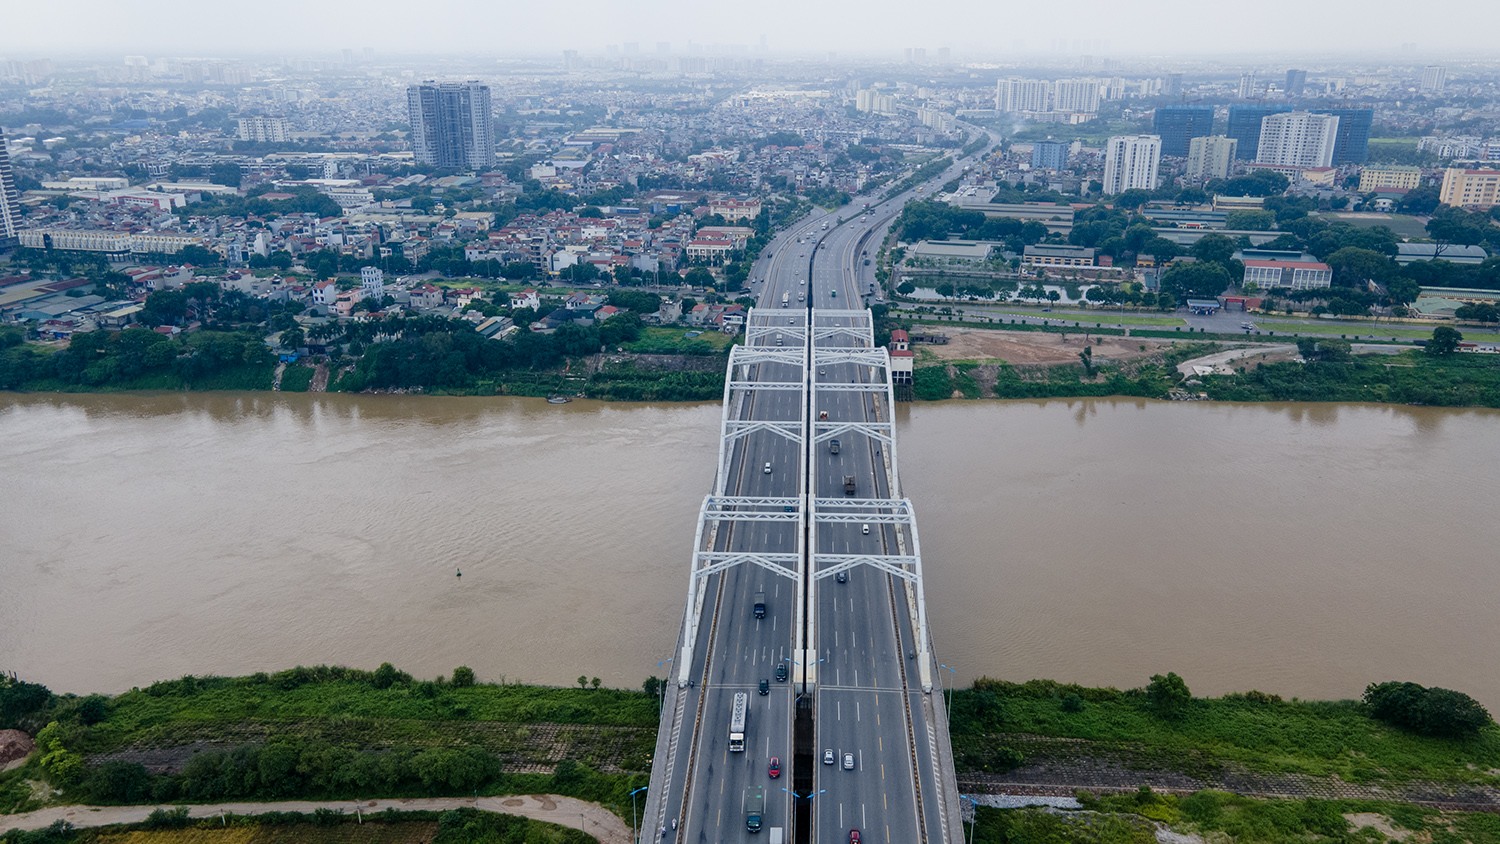 Cầu Đông Trù bắc qua sông Đuống nối liền quận Long Biên và huyện Đông Anh được khởi công xây dựng từ năm 2006. Sau 8 năm thi công, cầu được khánh thành vào ngày 9/10/2014.